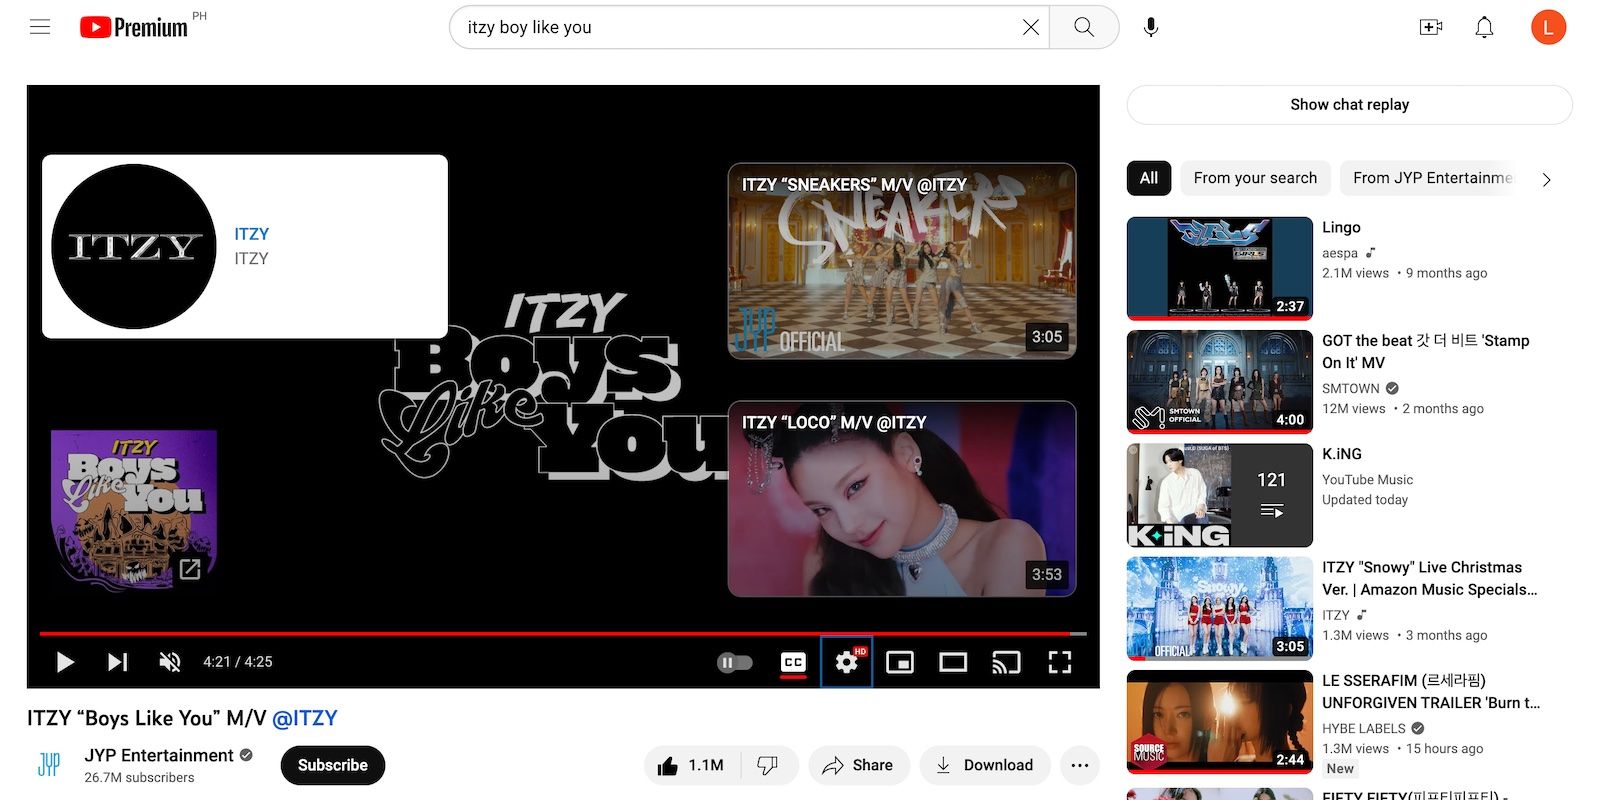 Video âm nhạc YouTube Itzy với thẻ kết thúc ở bốn góc